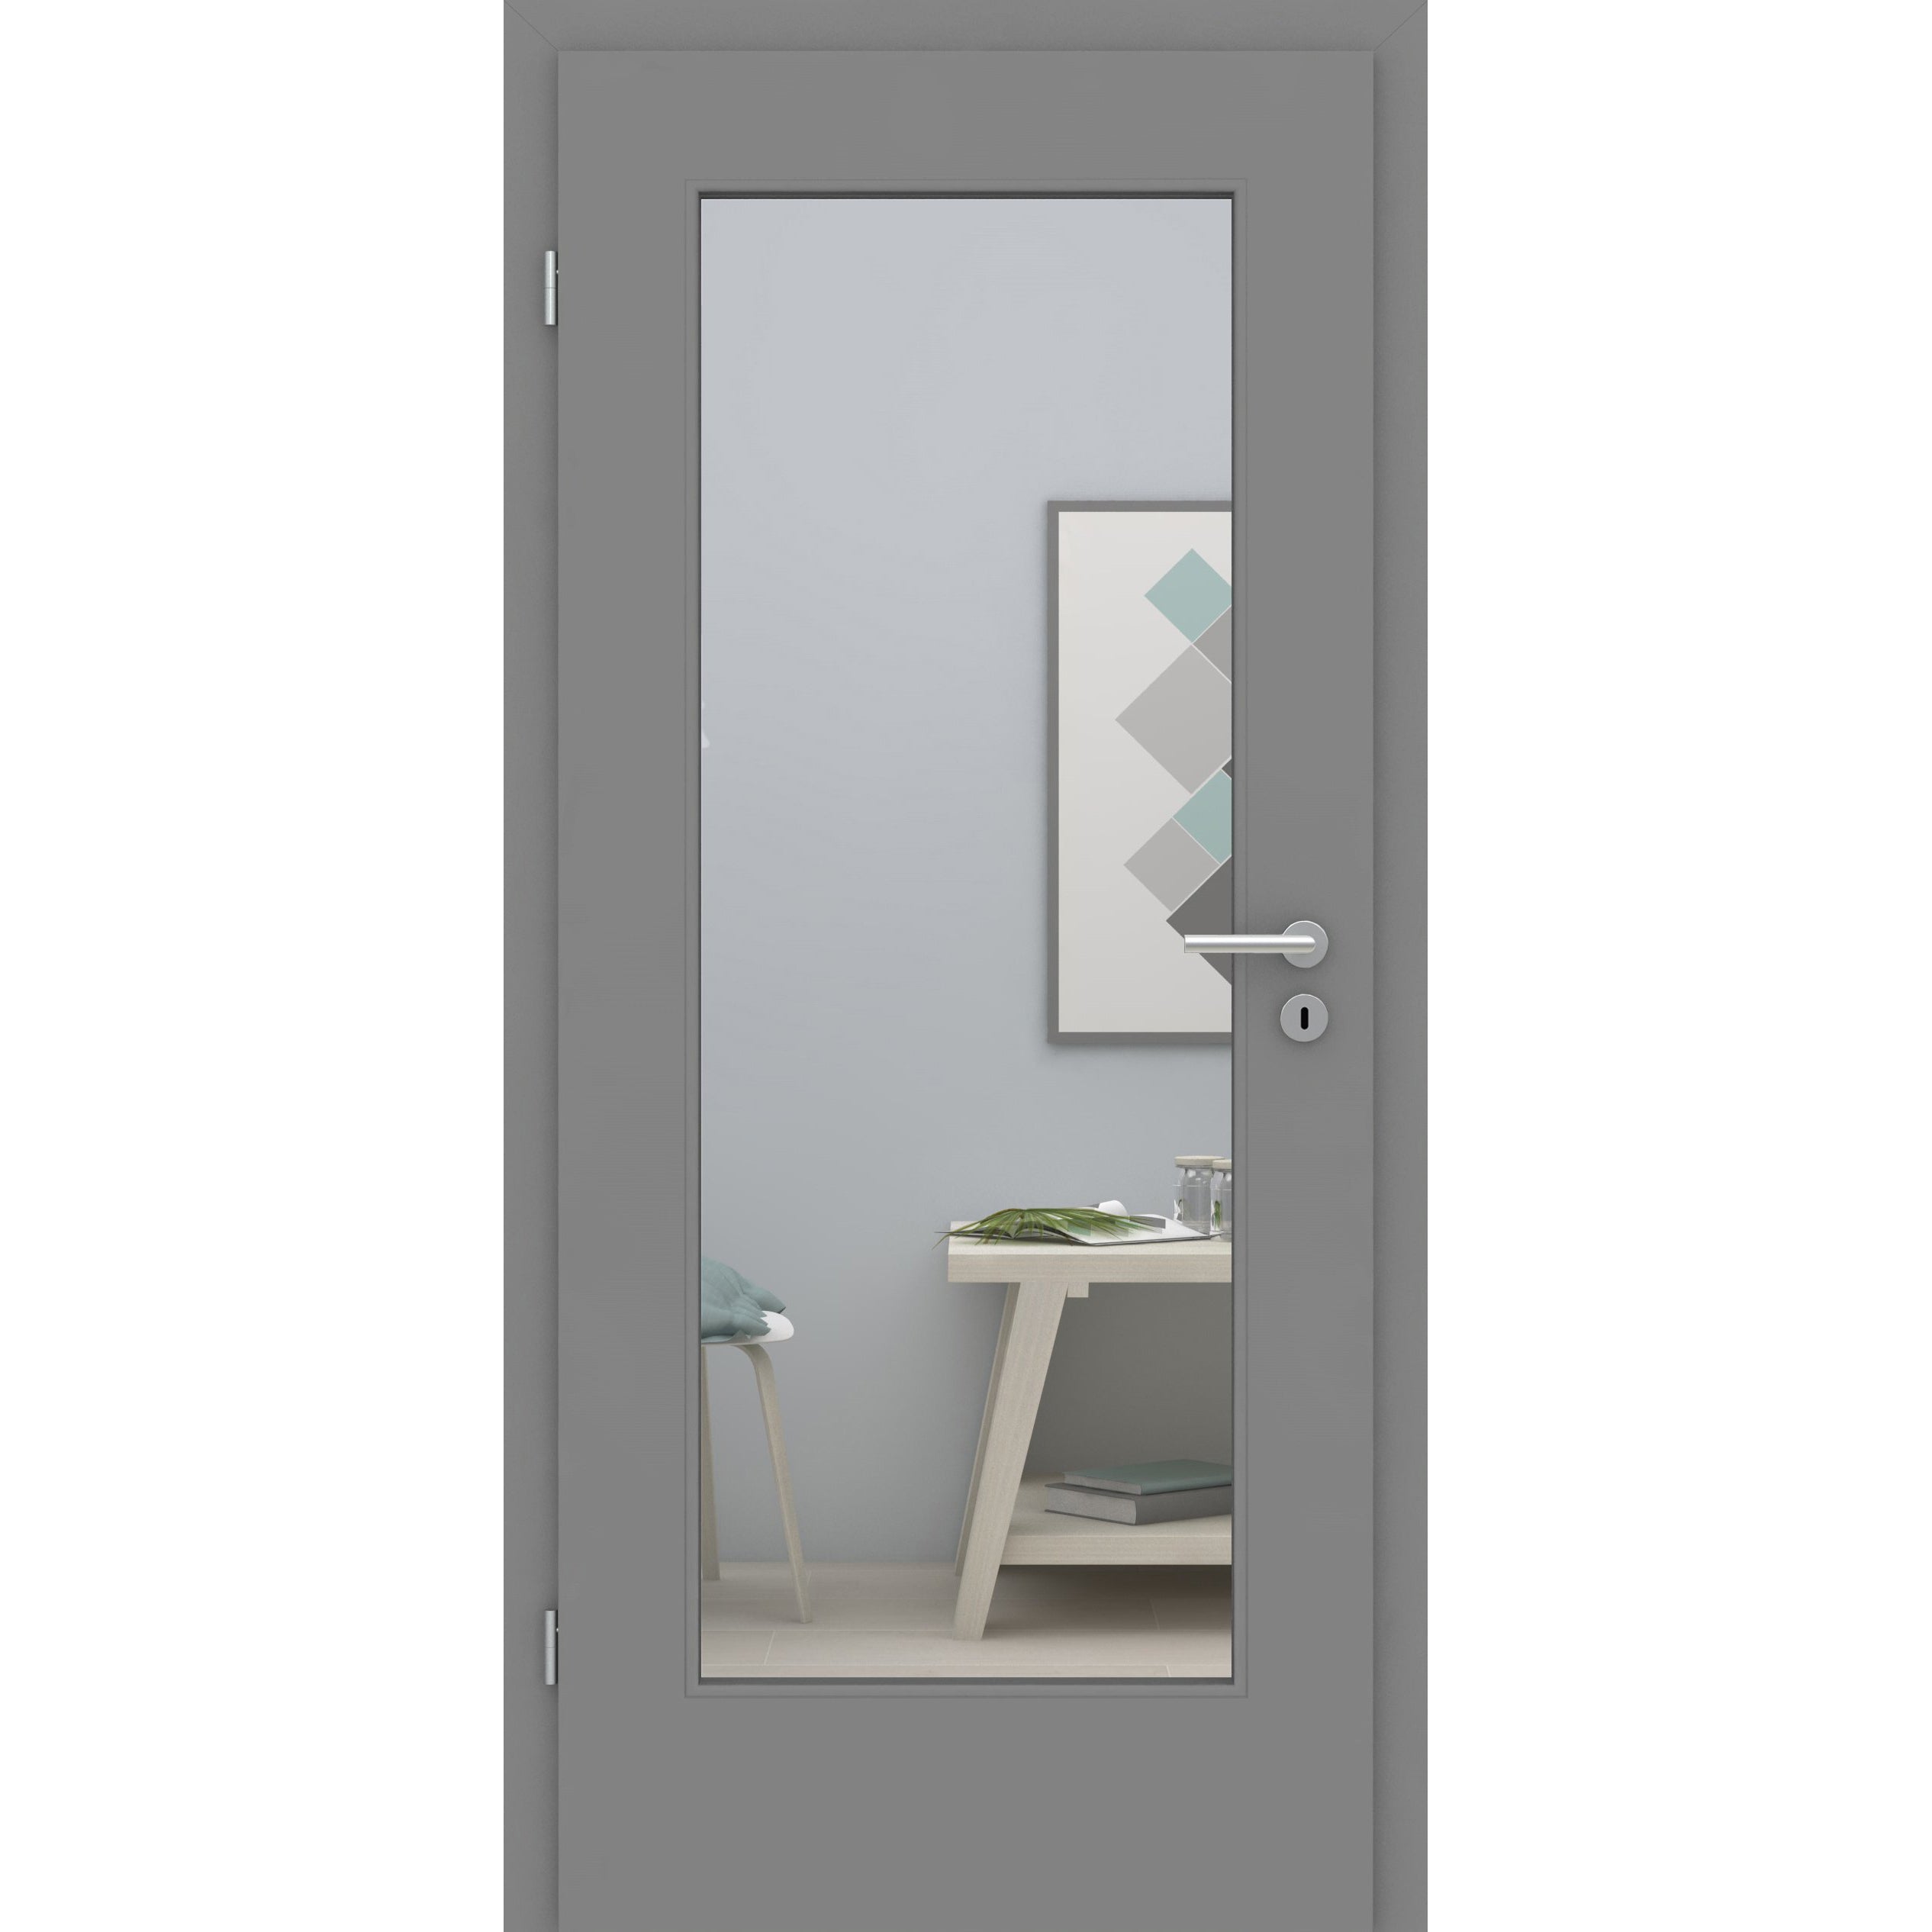 Zimmertür mit Lichtausschnitt groß grau glatt Designkante - Modell LA1